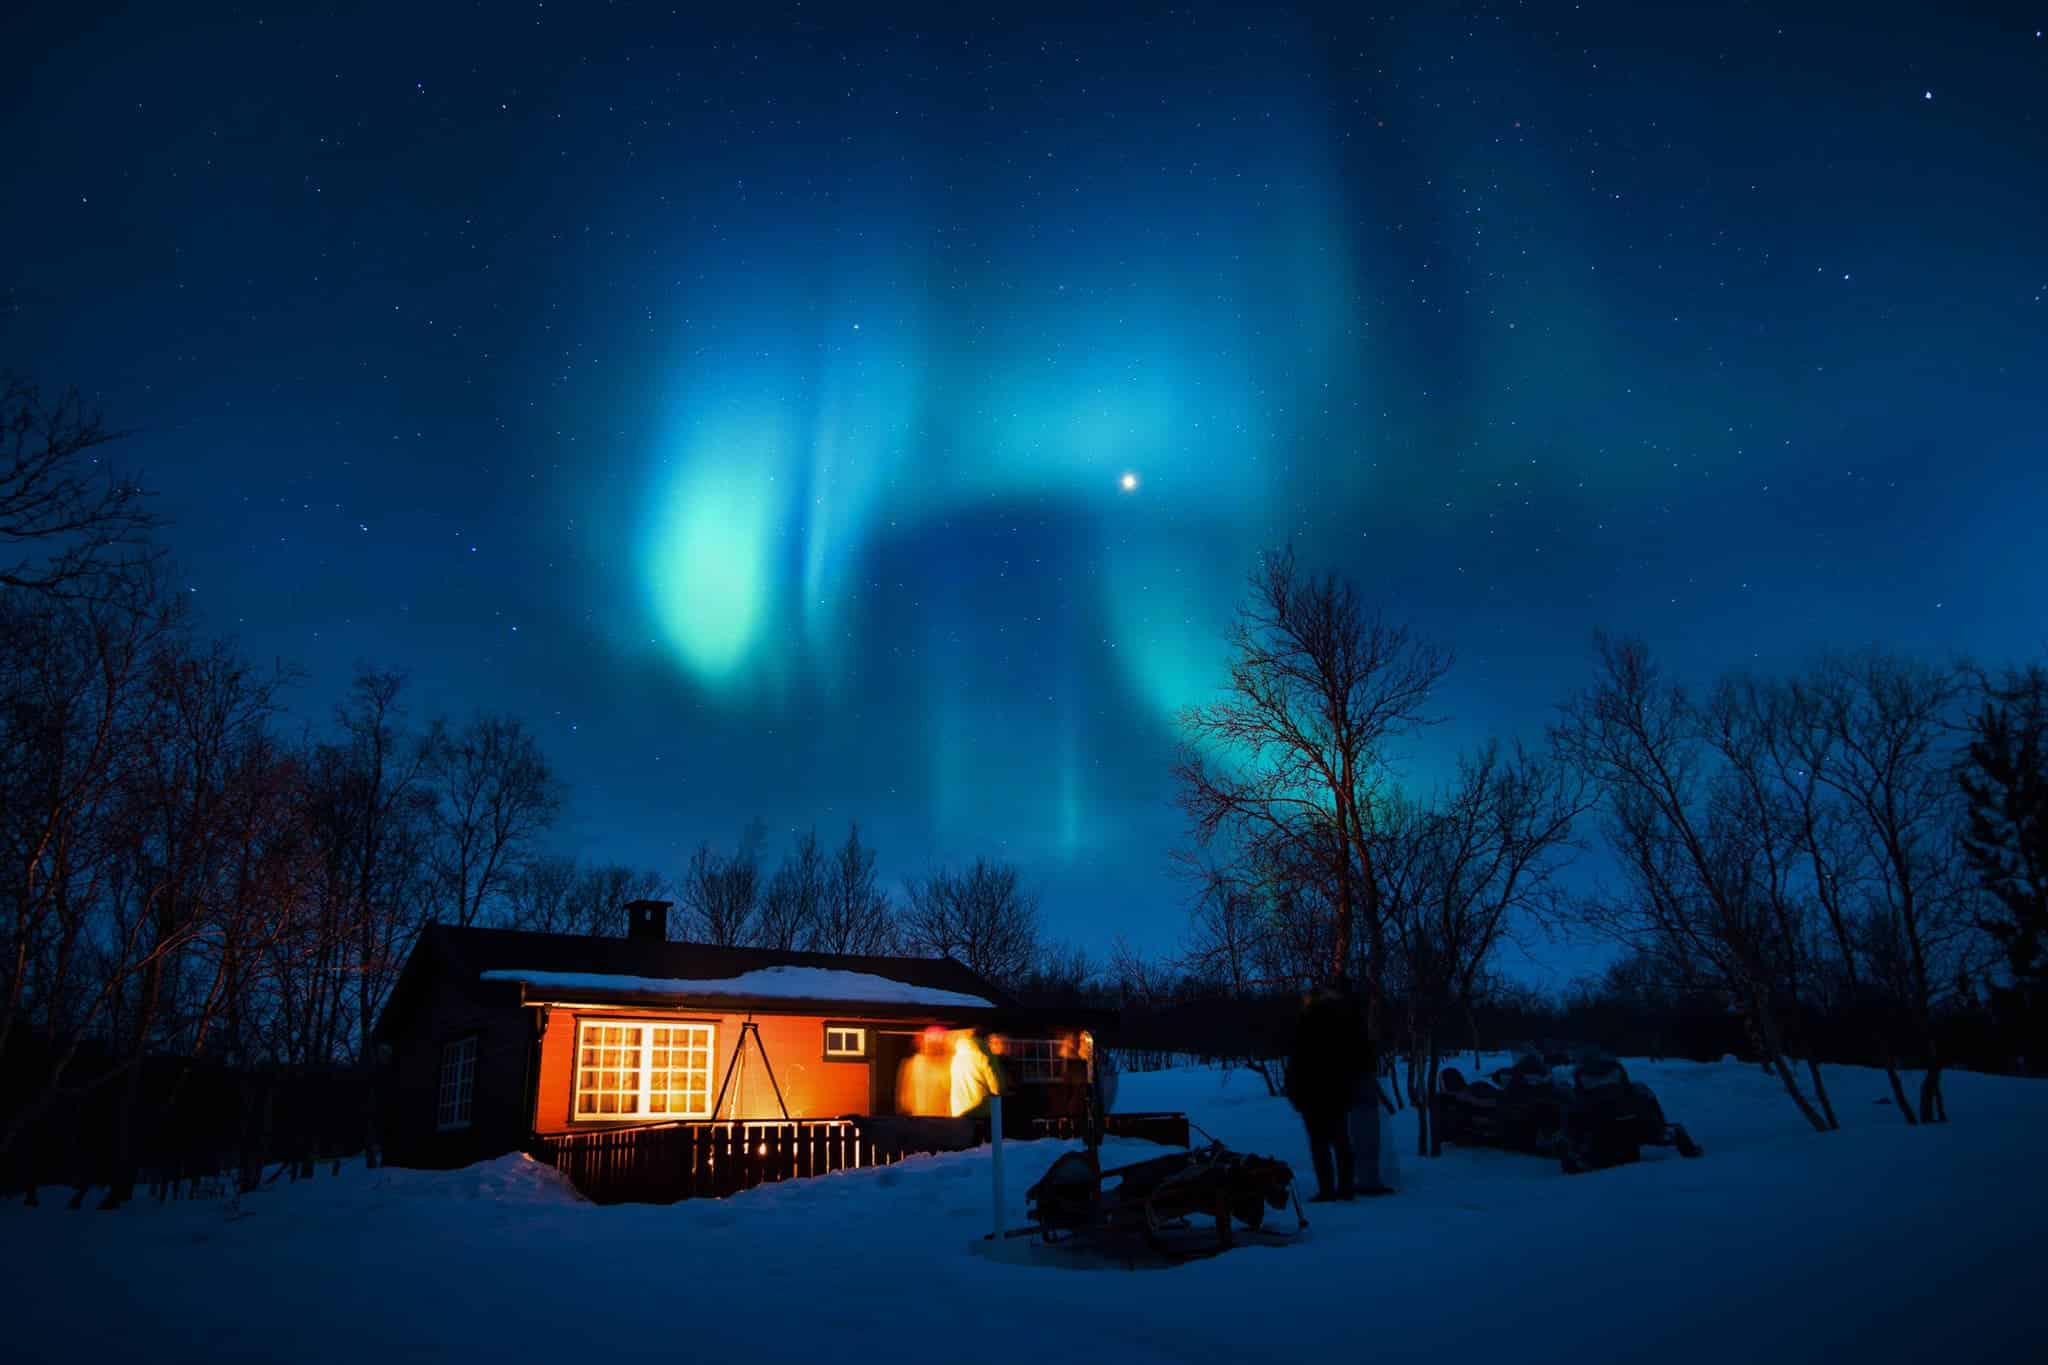 Cinco melhores lugares para ver a aurora boreal no mundo - Viajo logo Existo